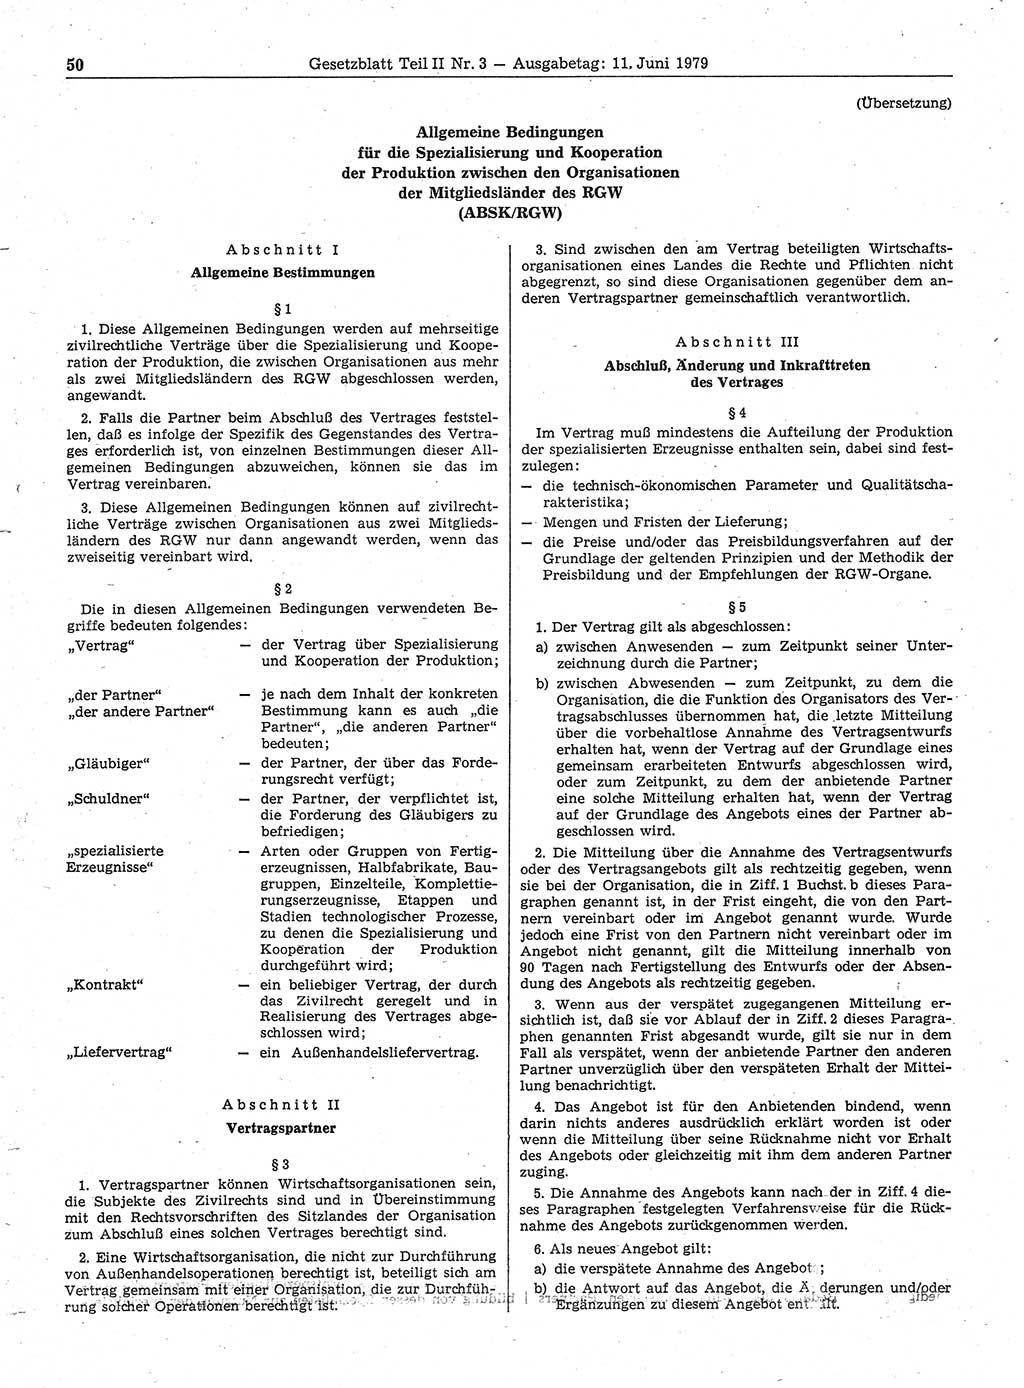 Gesetzblatt (GBl.) der Deutschen Demokratischen Republik (DDR) Teil ⅠⅠ 1979, Seite 50 (GBl. DDR ⅠⅠ 1979, S. 50)